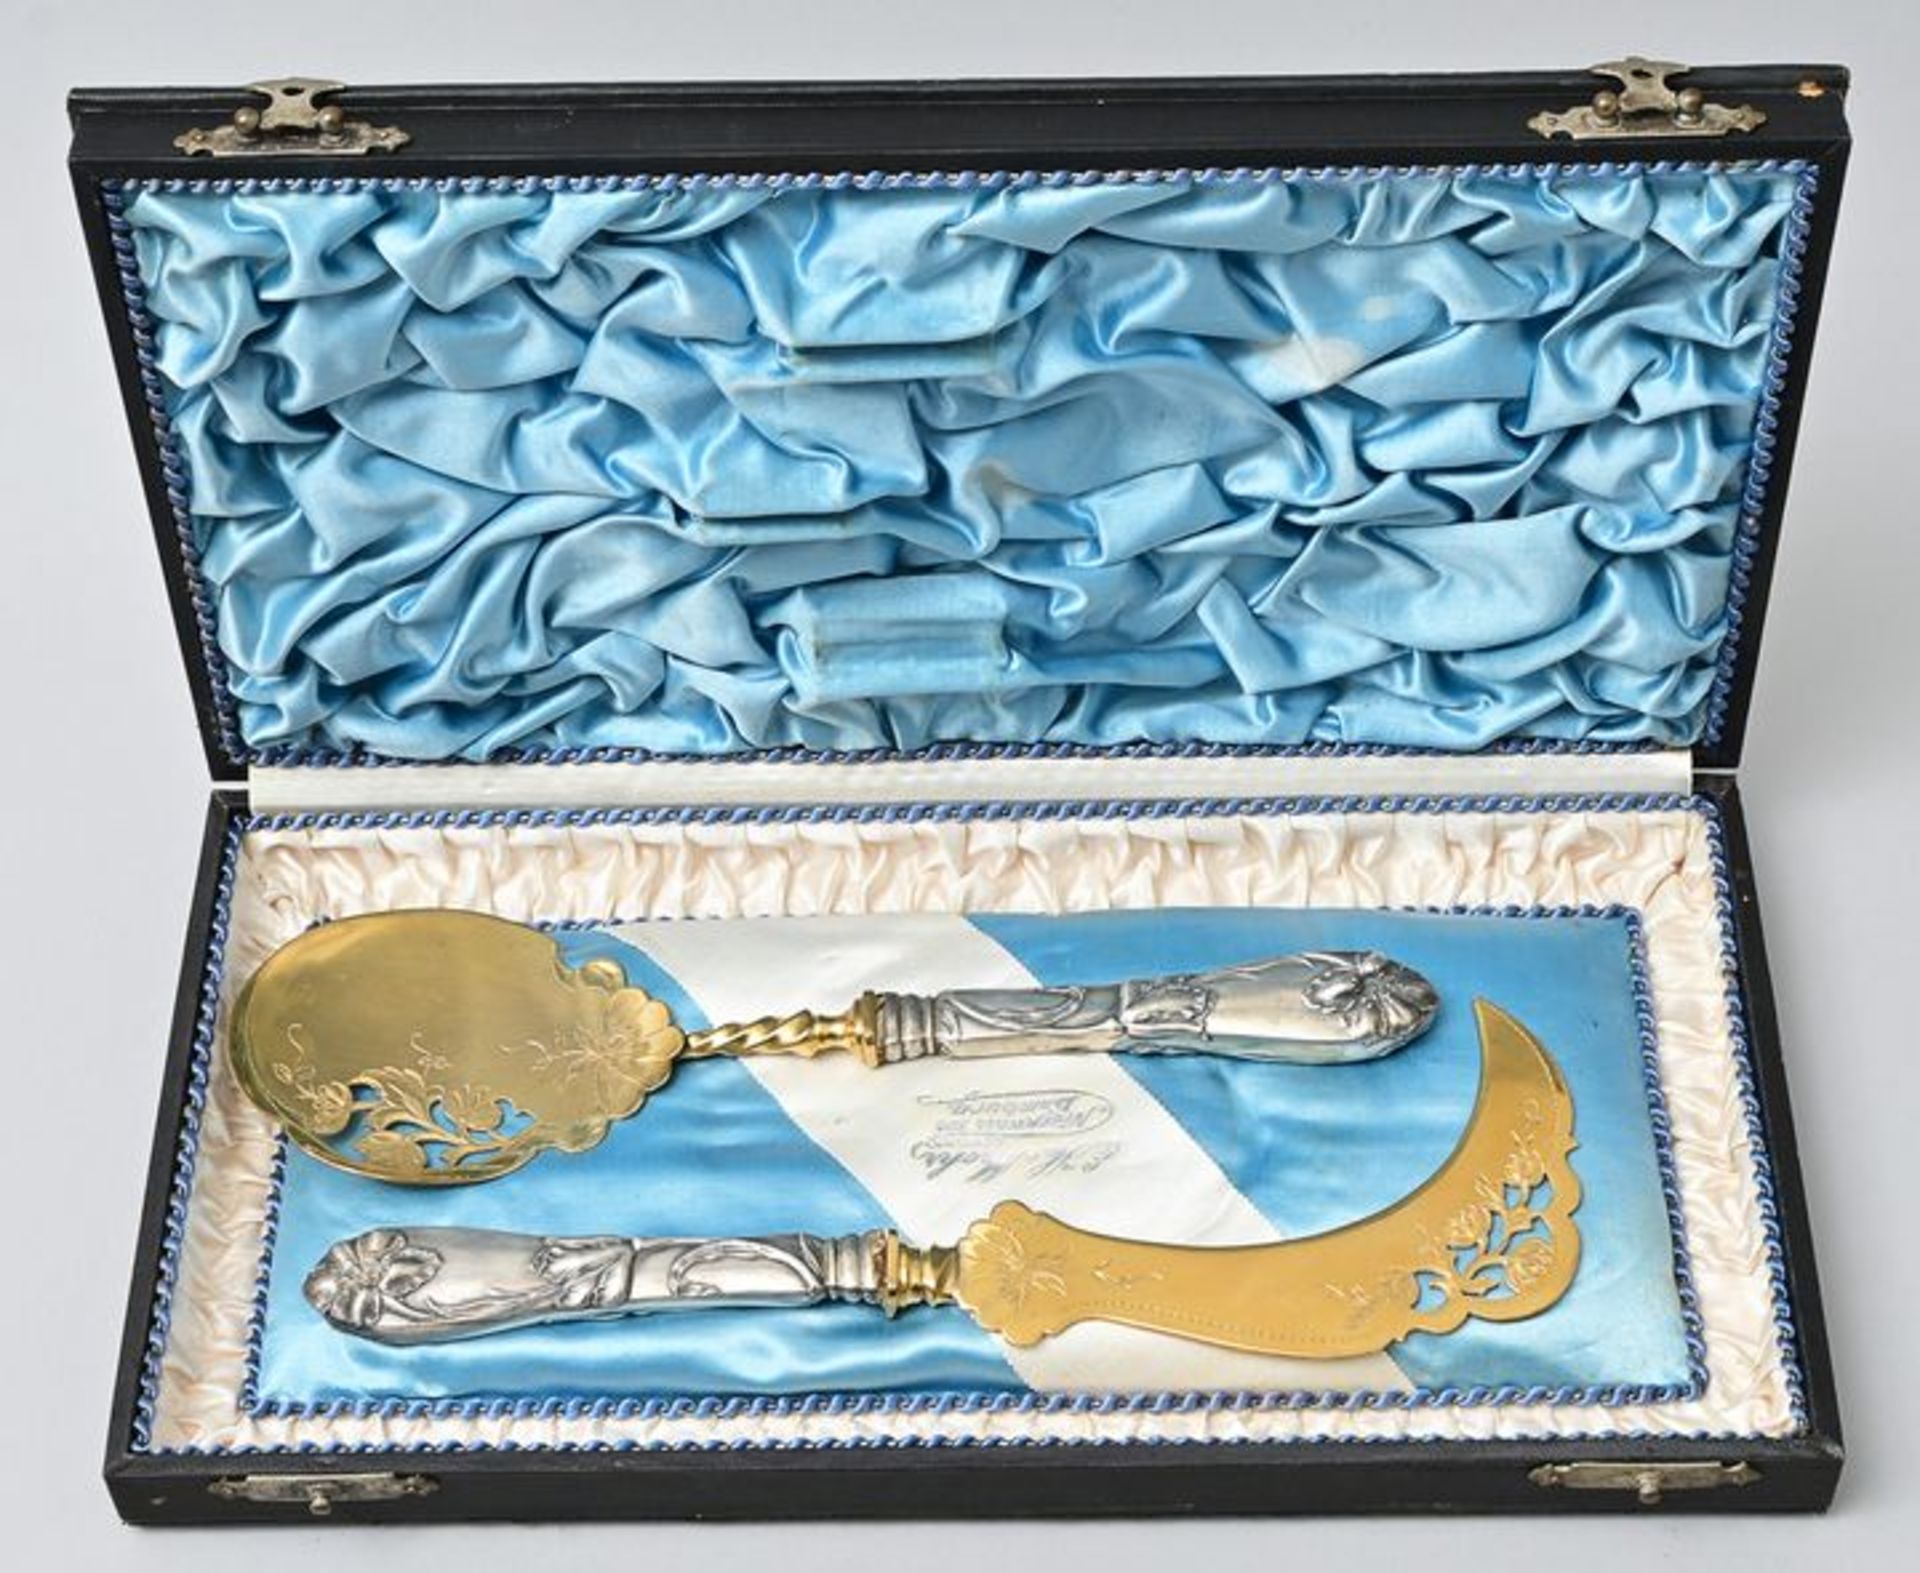 Jugendstil-Eis-Servierbesteck/ art nouveau cutlery - Image 3 of 3